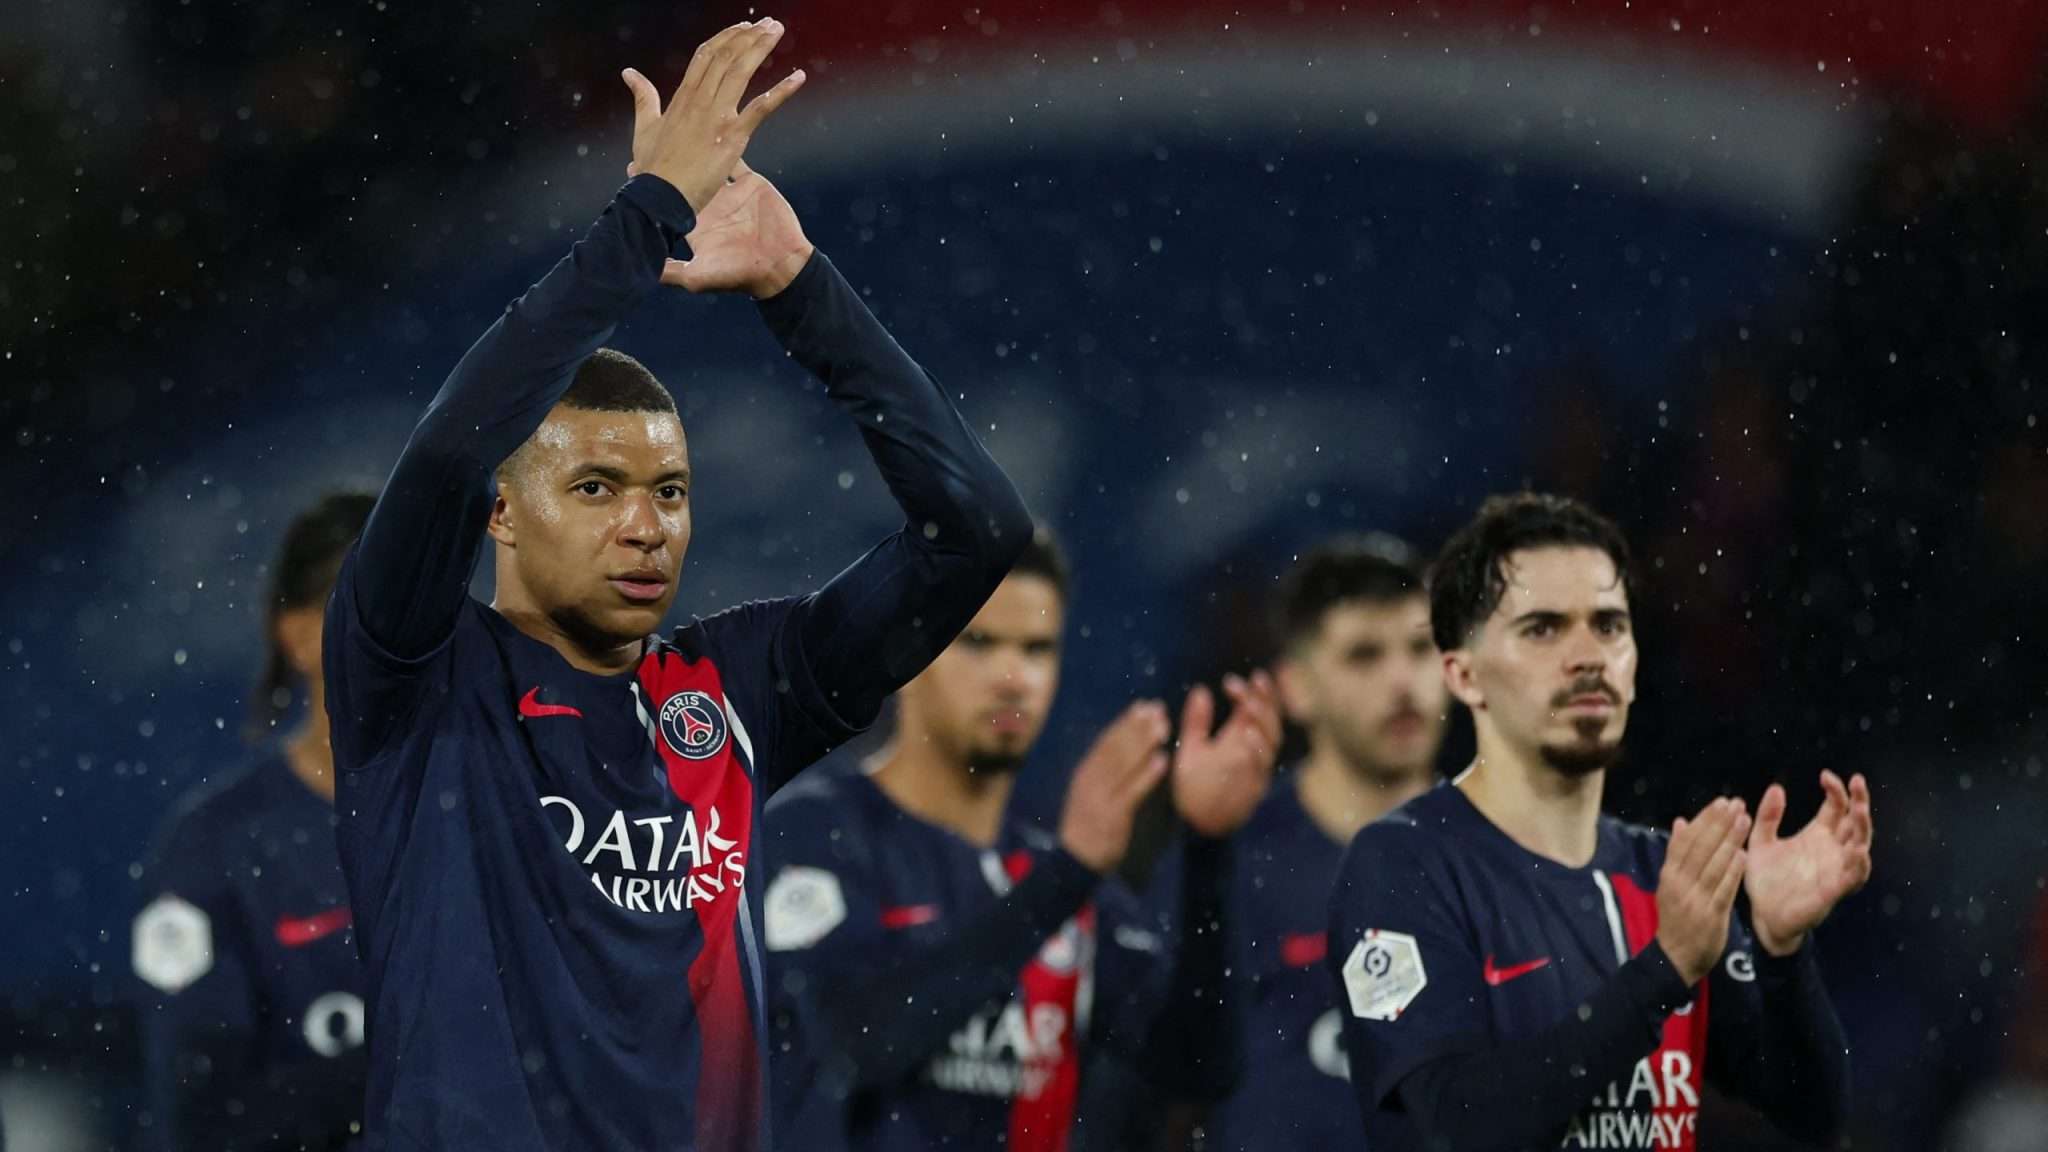 Logra el PSG su tercer título de Liga en Francia al hilo y 12 de la historia 